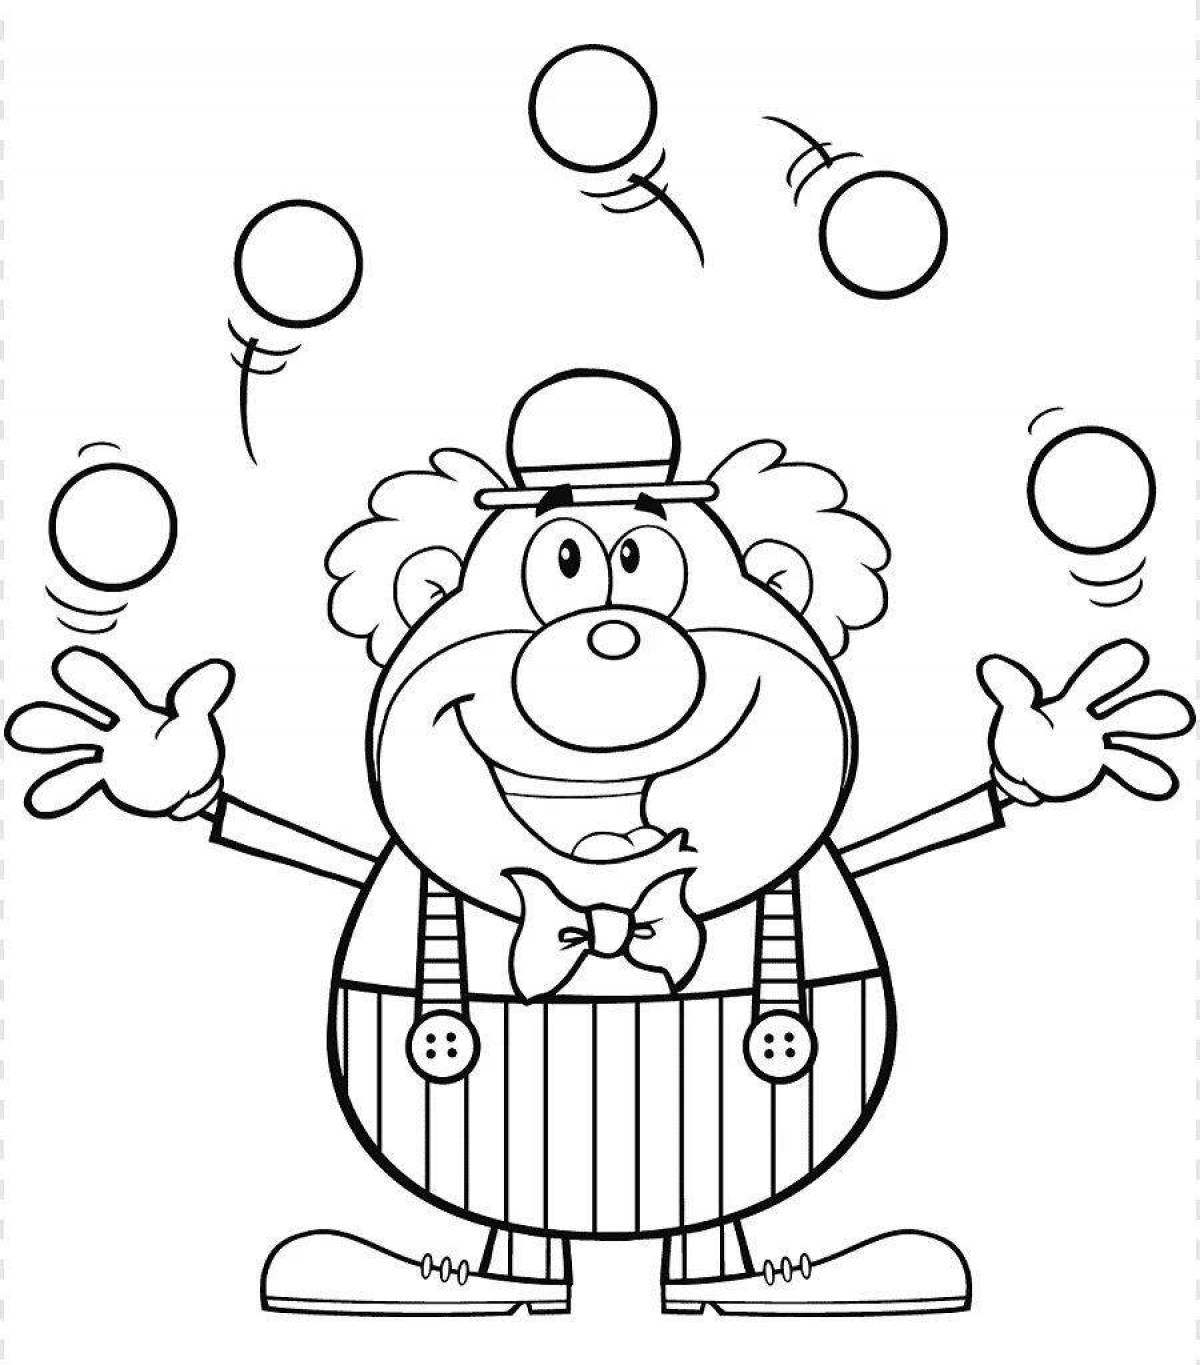 Энергичный клоун с воздушными шарами